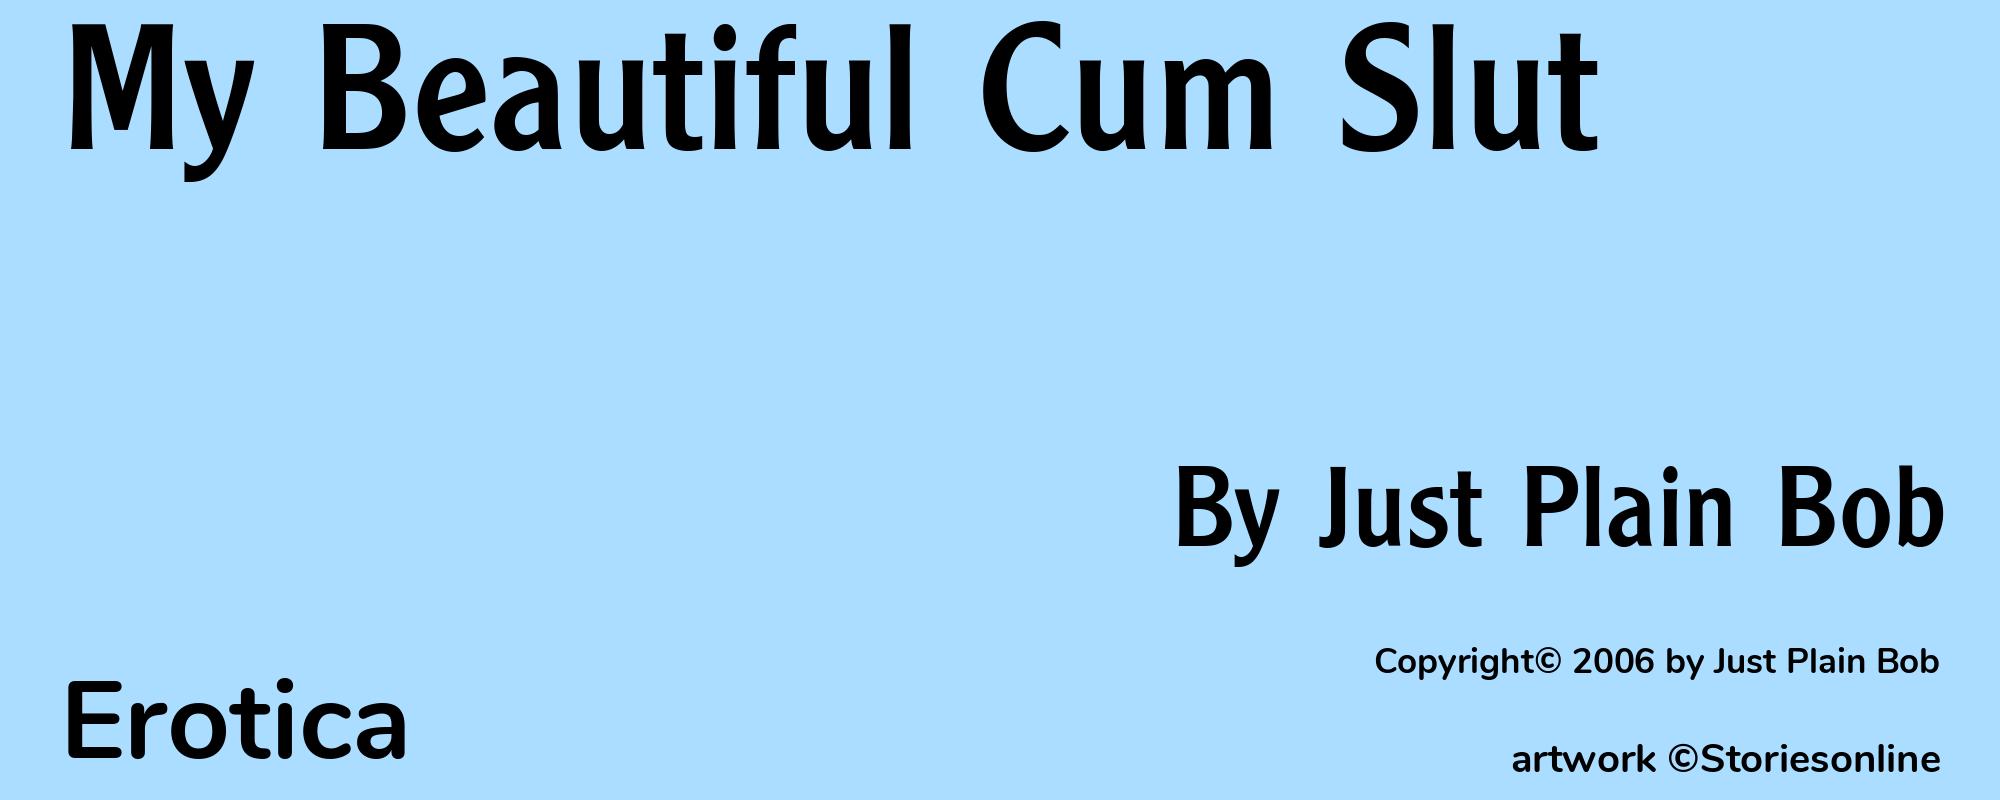 My Beautiful Cum Slut - Cover